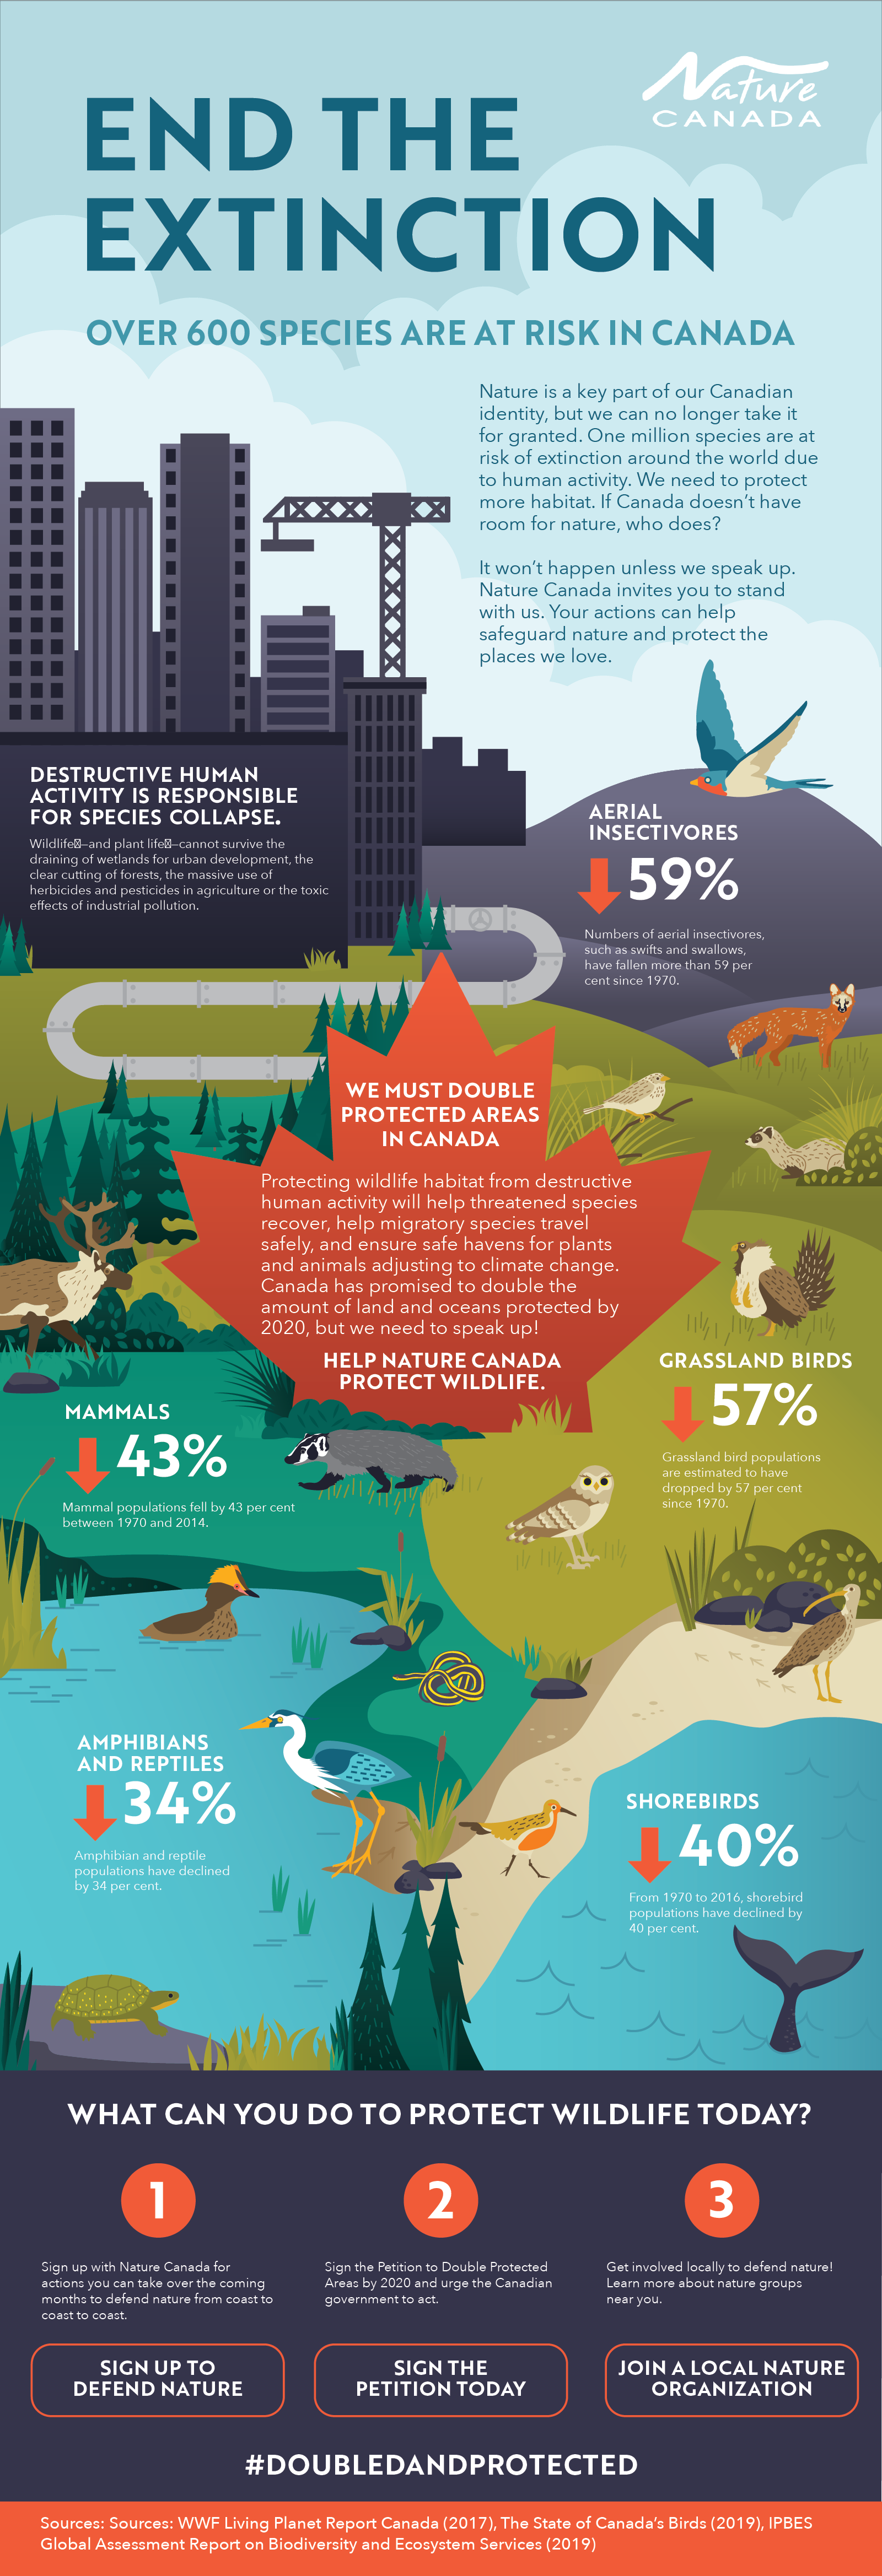 Deze afbeelding legt uit wat voor soort dieren die in Canada dreigen uit te sterven.